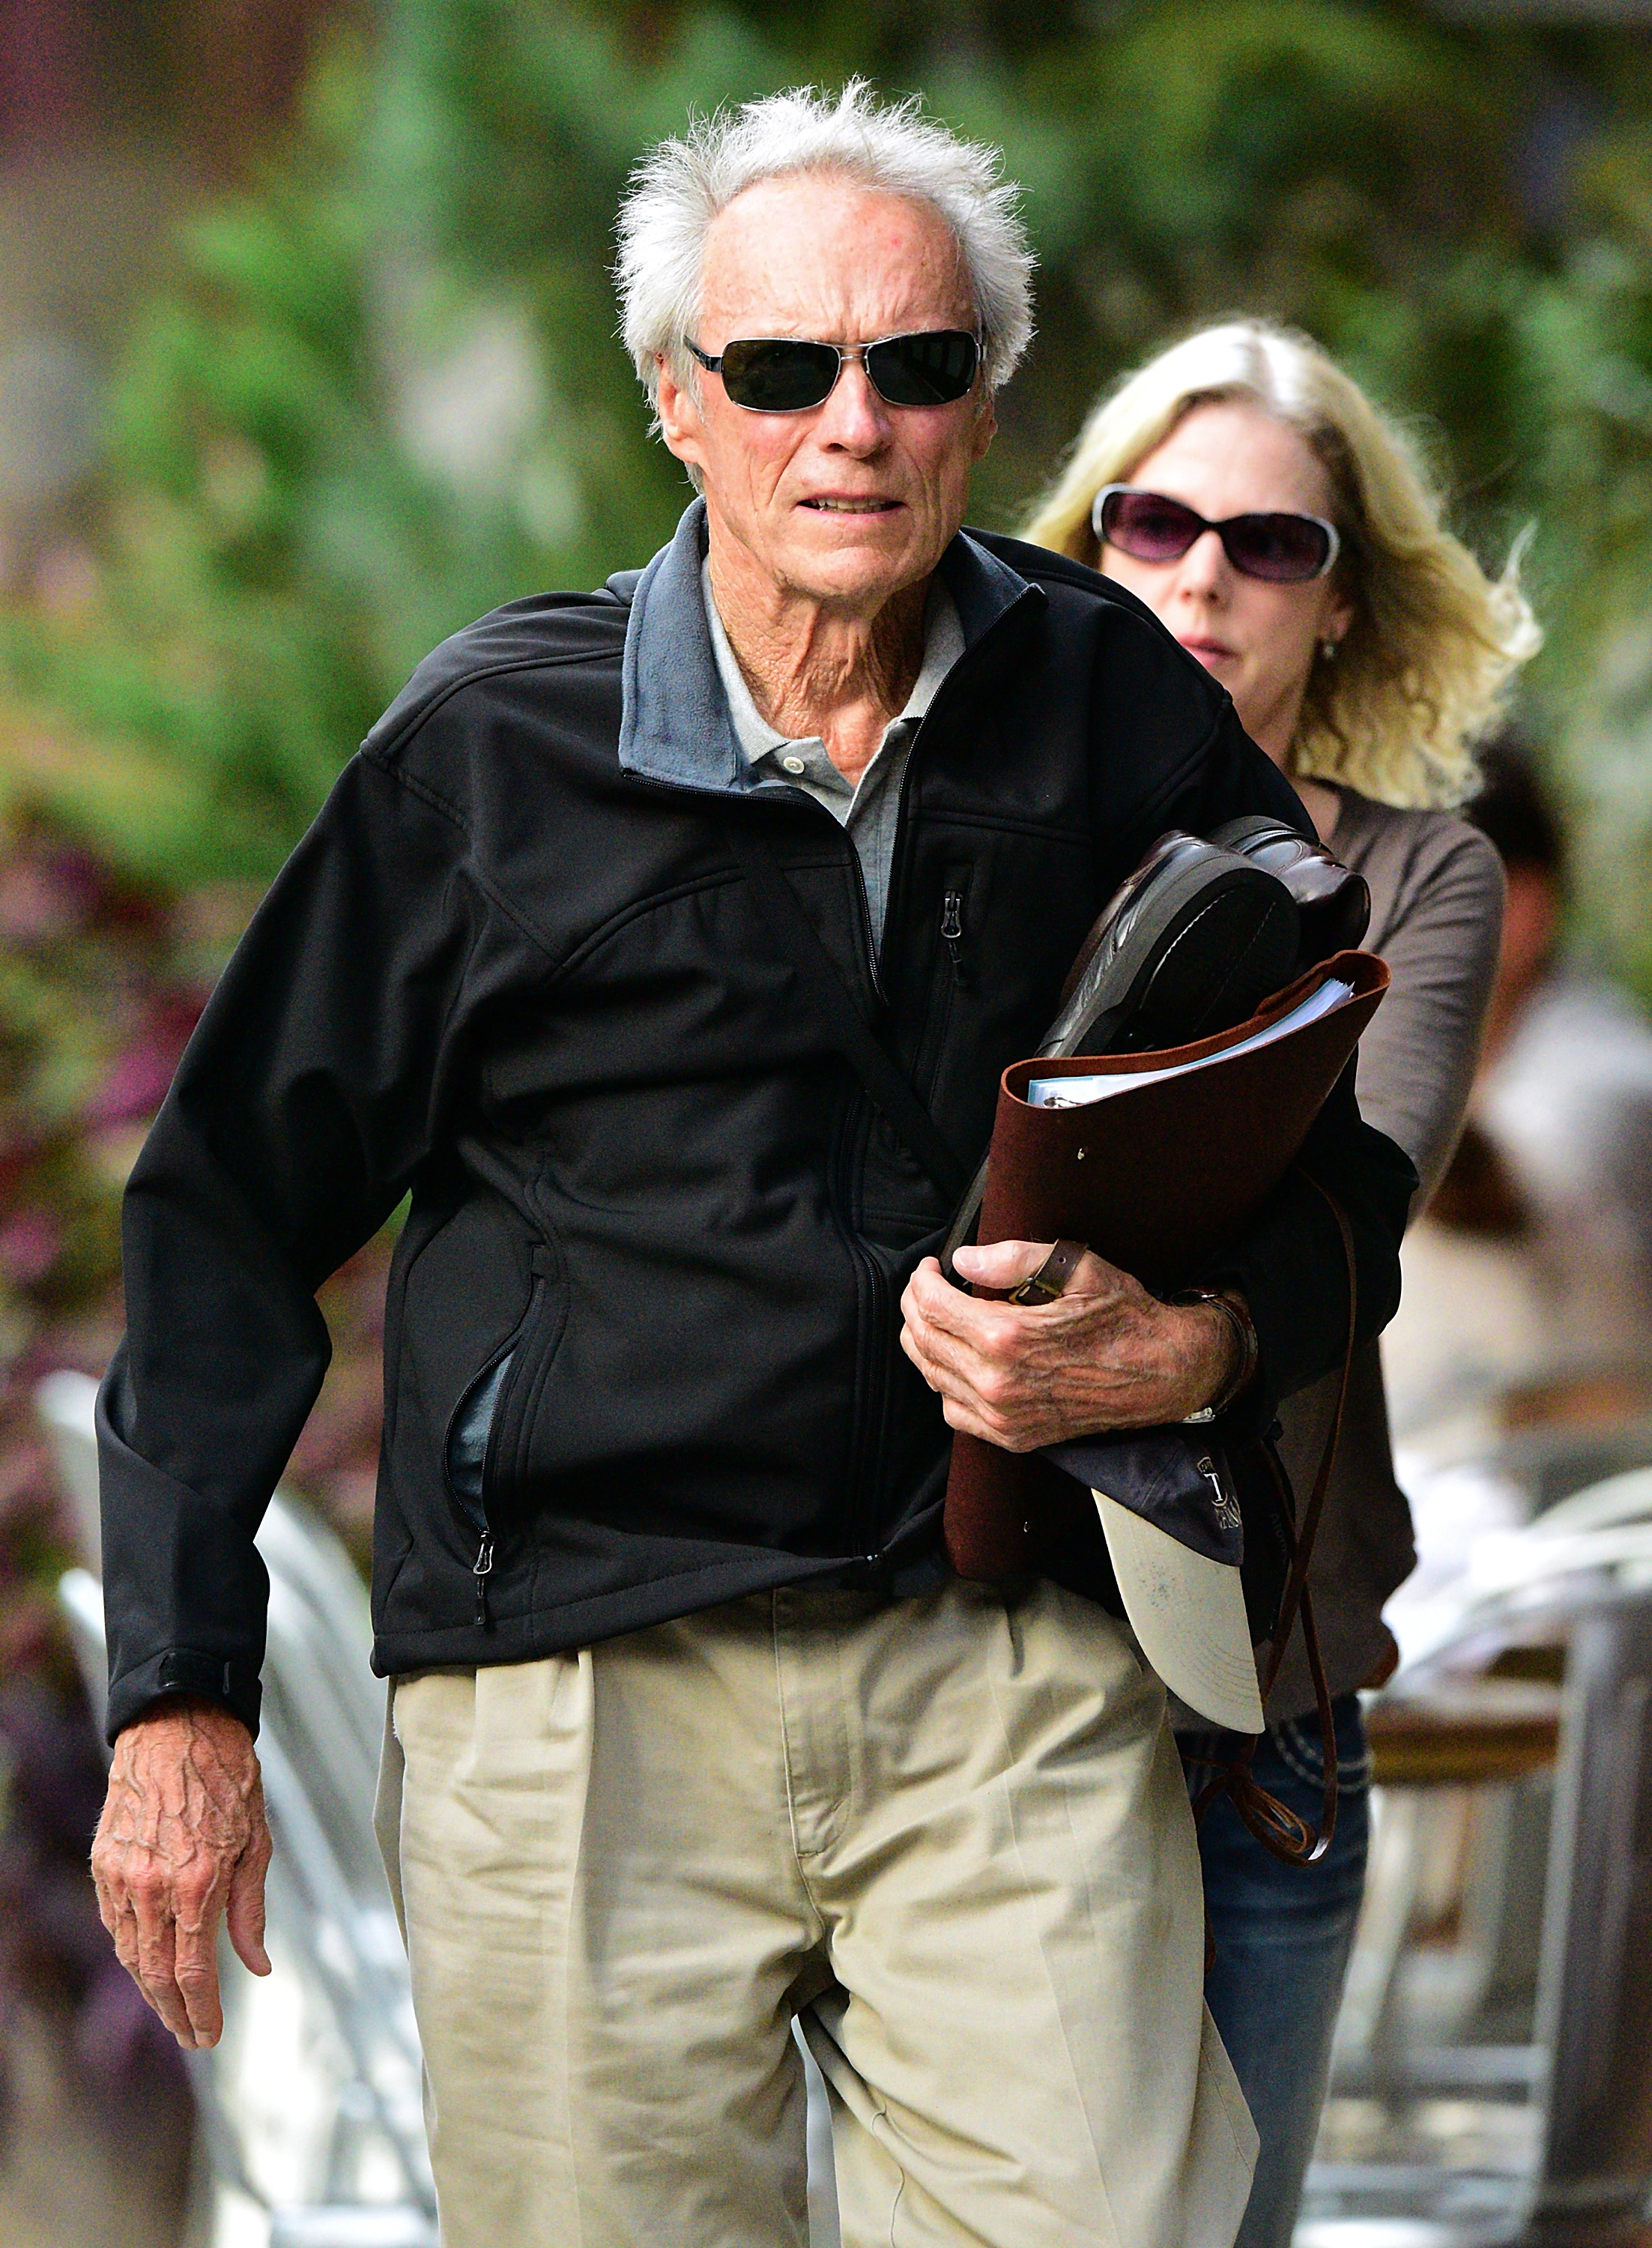 Clint Eastwood y Christina Sandera vistos en las calles de Manhattan en Nueva York, el 28 de septiembre de 2015. | Fuente: Getty Images